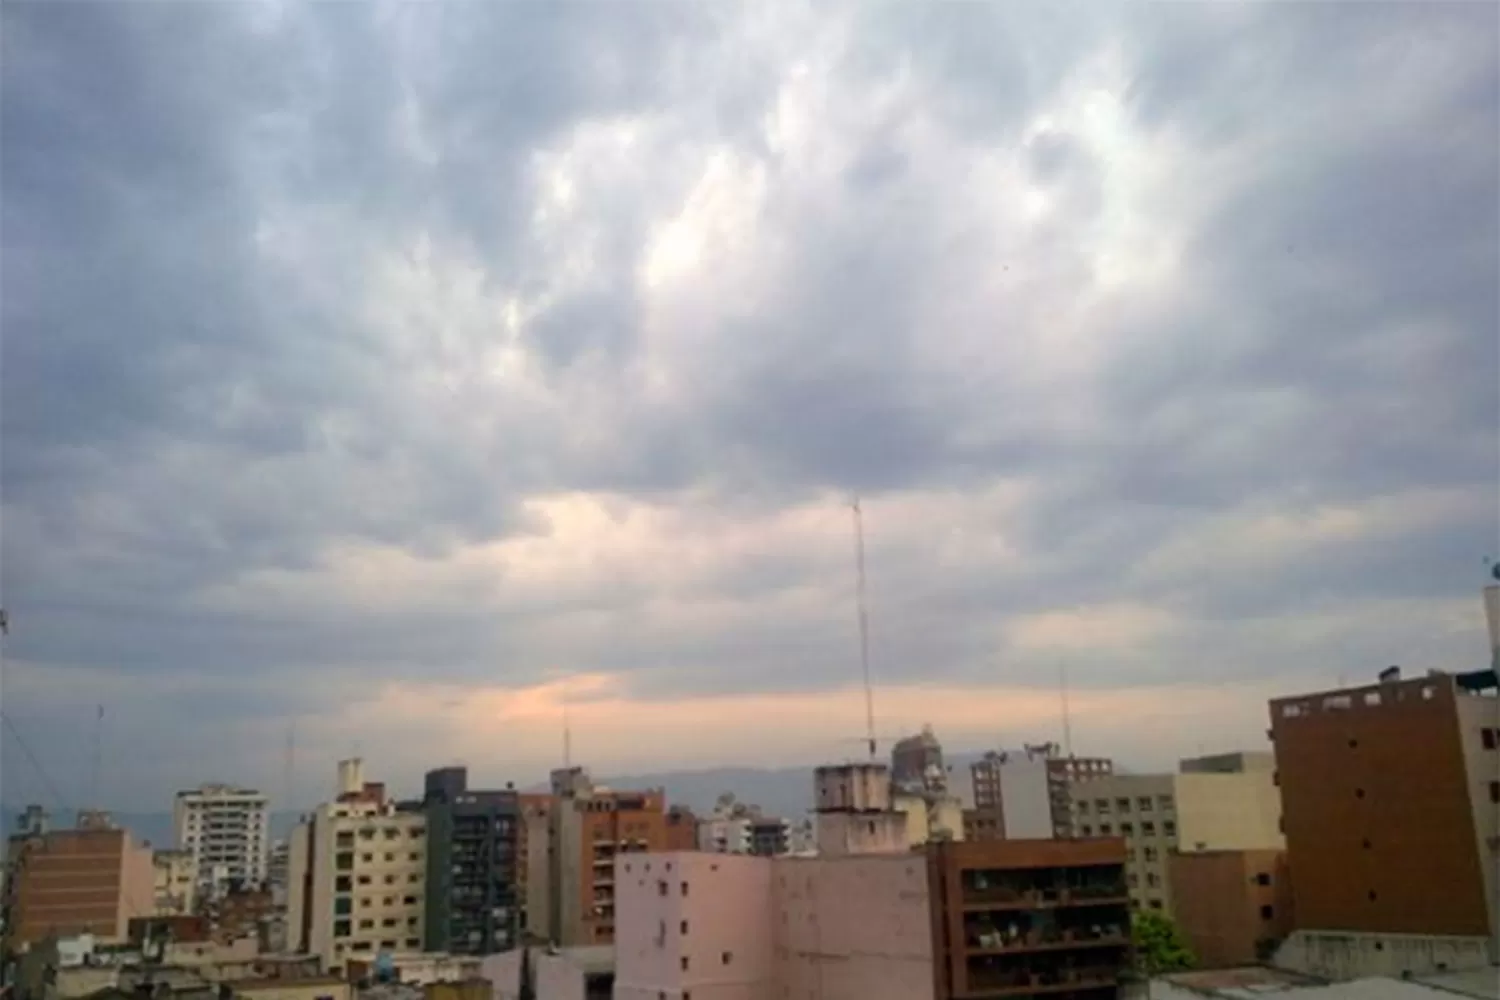 NUBES POR DOQUIER. El domingo se mantendrá nublado en Tucumán.